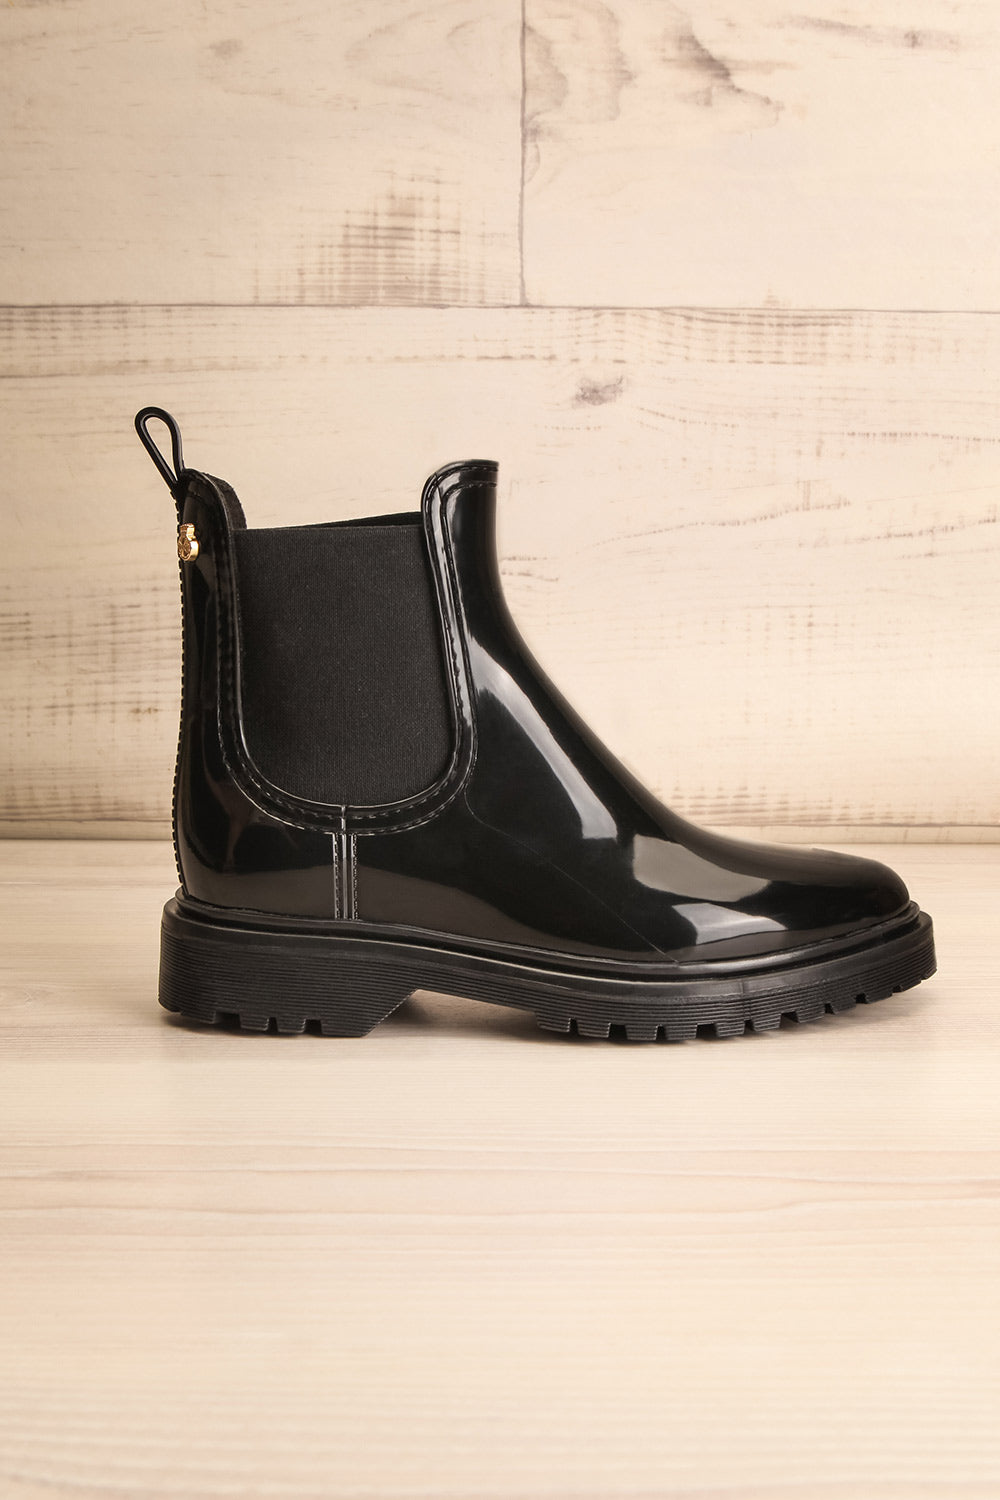 Pupukea Black Rain Boots | La Petite Garçonne side view